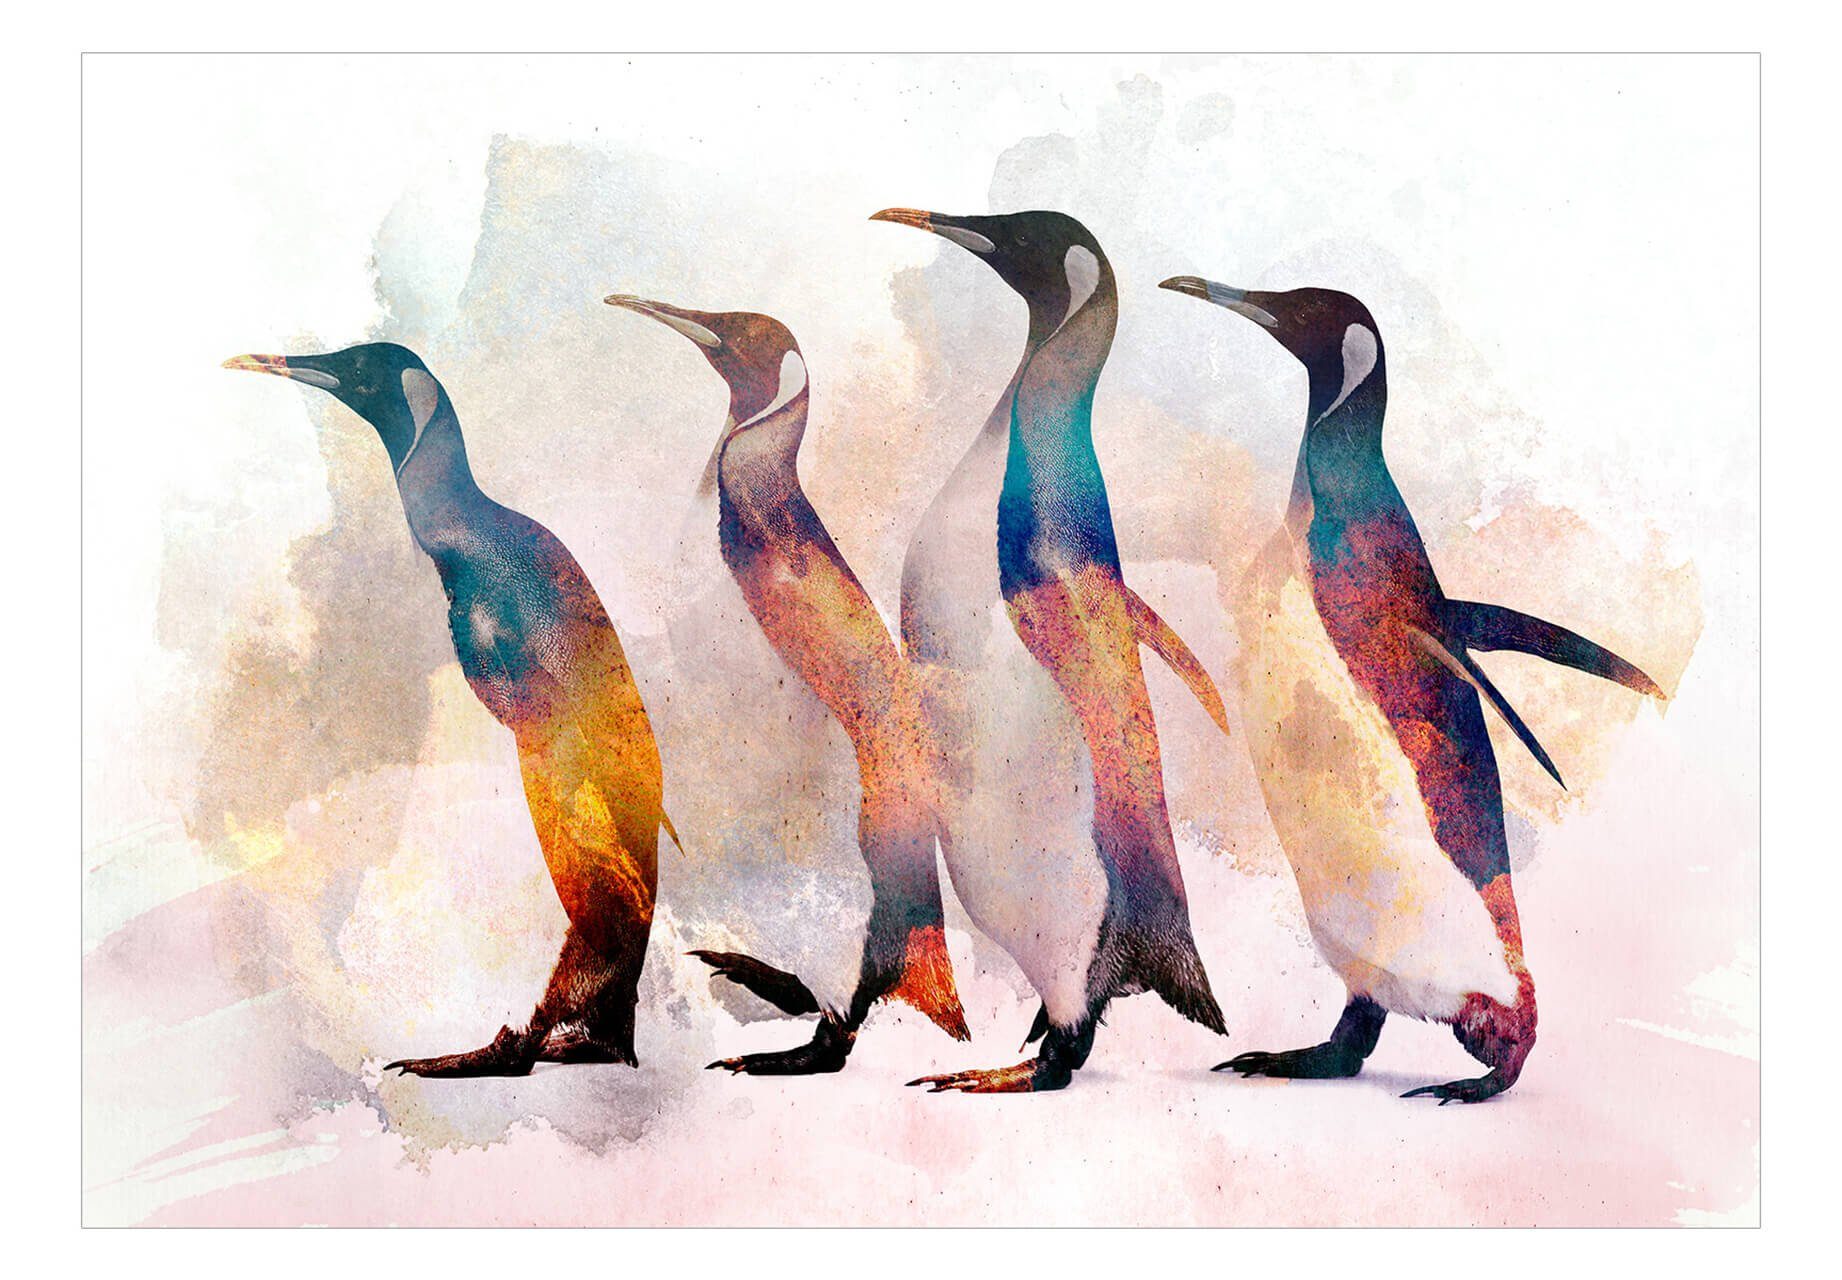 KUNSTLOFT Vliestapete Penguin Wandering 0.98x0.7 m, Design matt, Tapete lichtbeständige